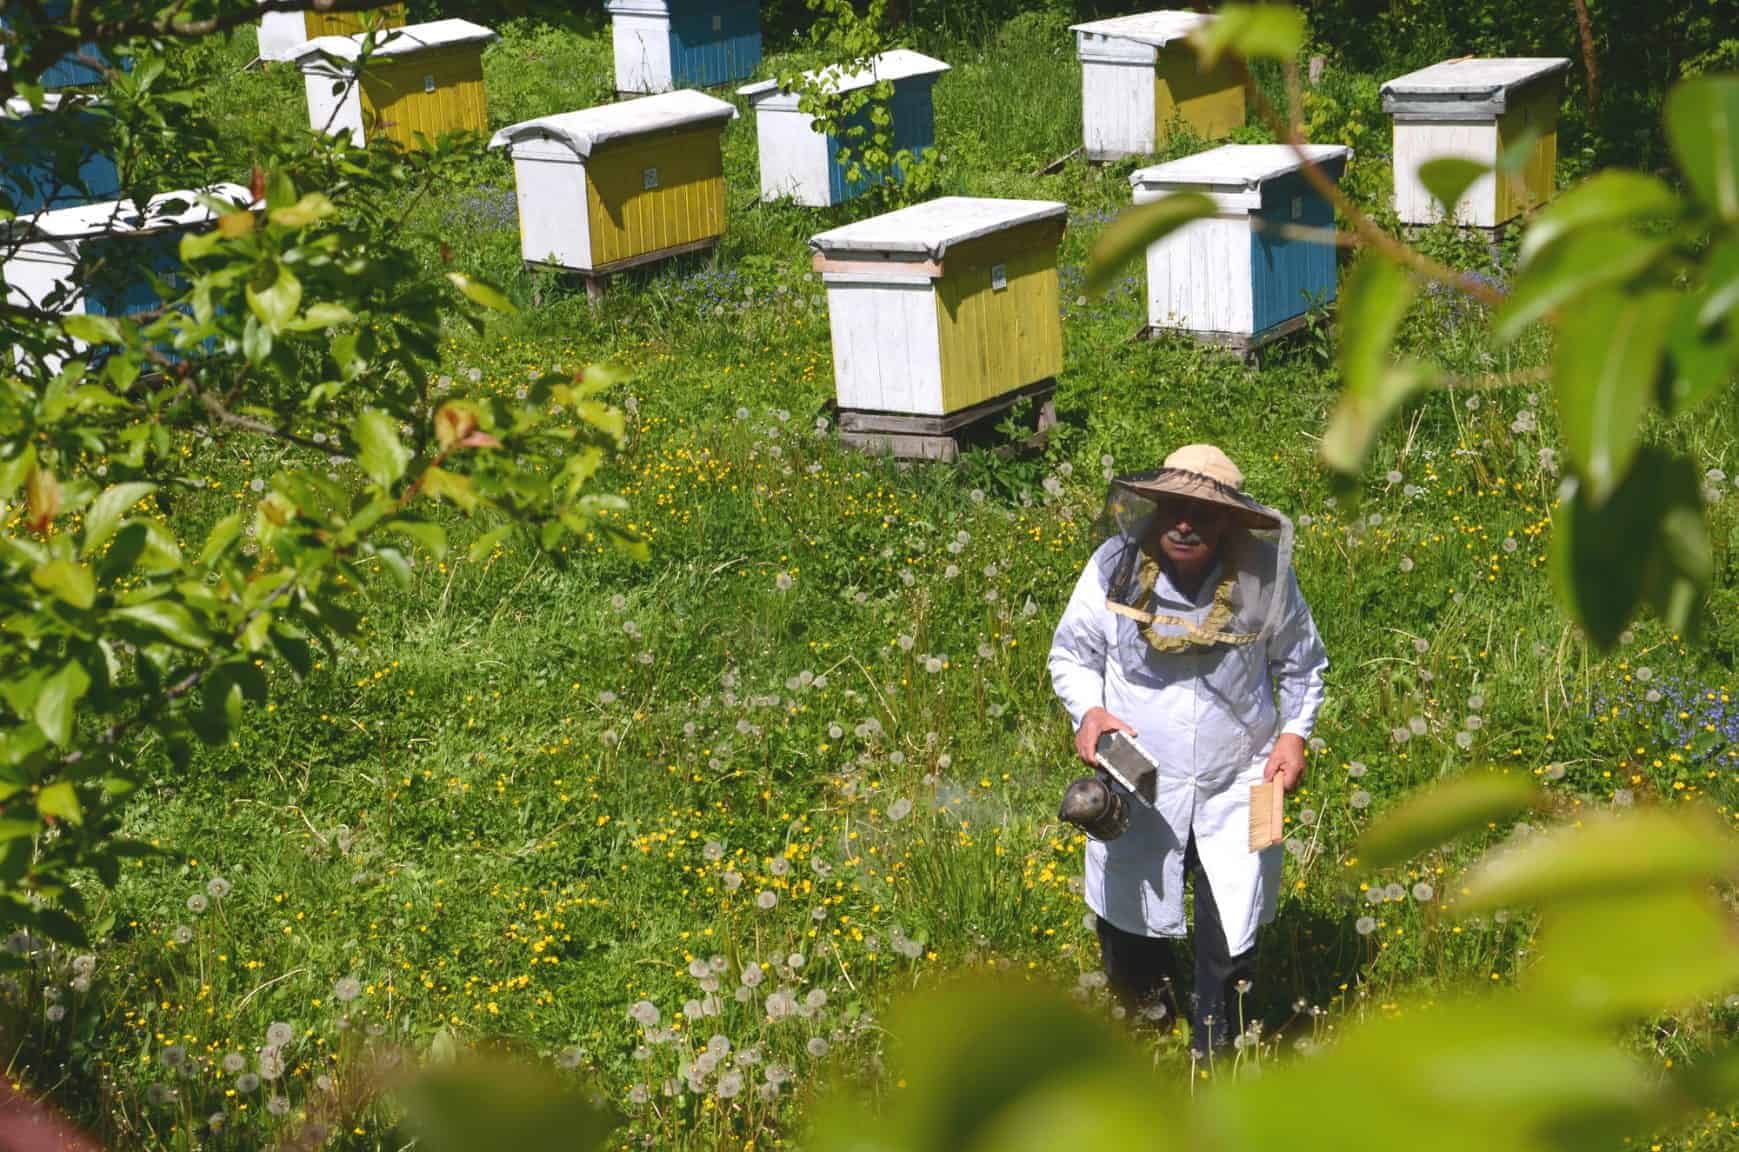 Checking hives